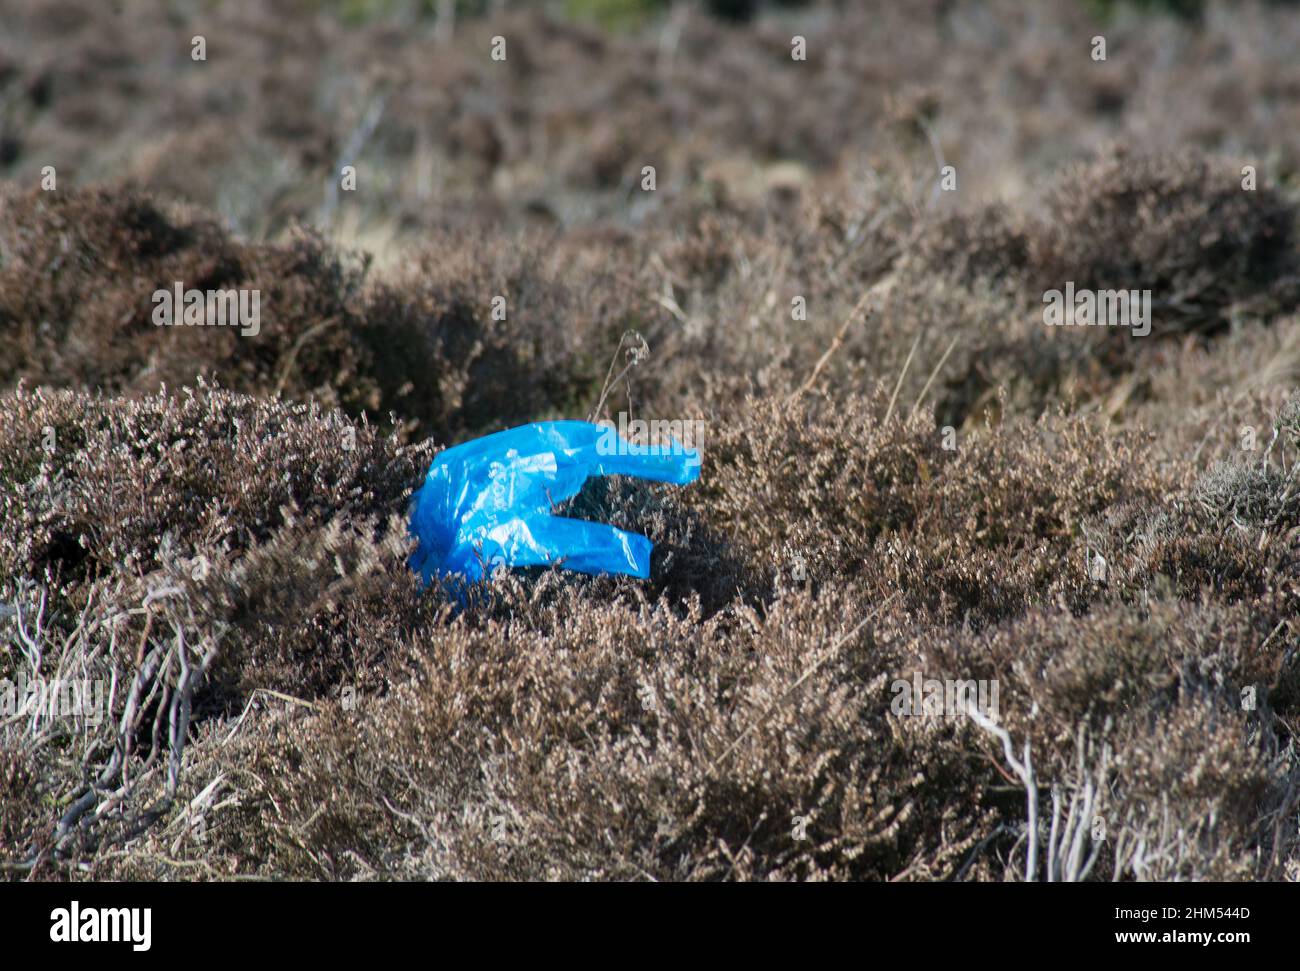 Imagen fantasmal de un guante de higiene de plástico azul que parece como si una mano estuviera dentro y saliendo de debajo del suelo y jaspeado Foto de stock